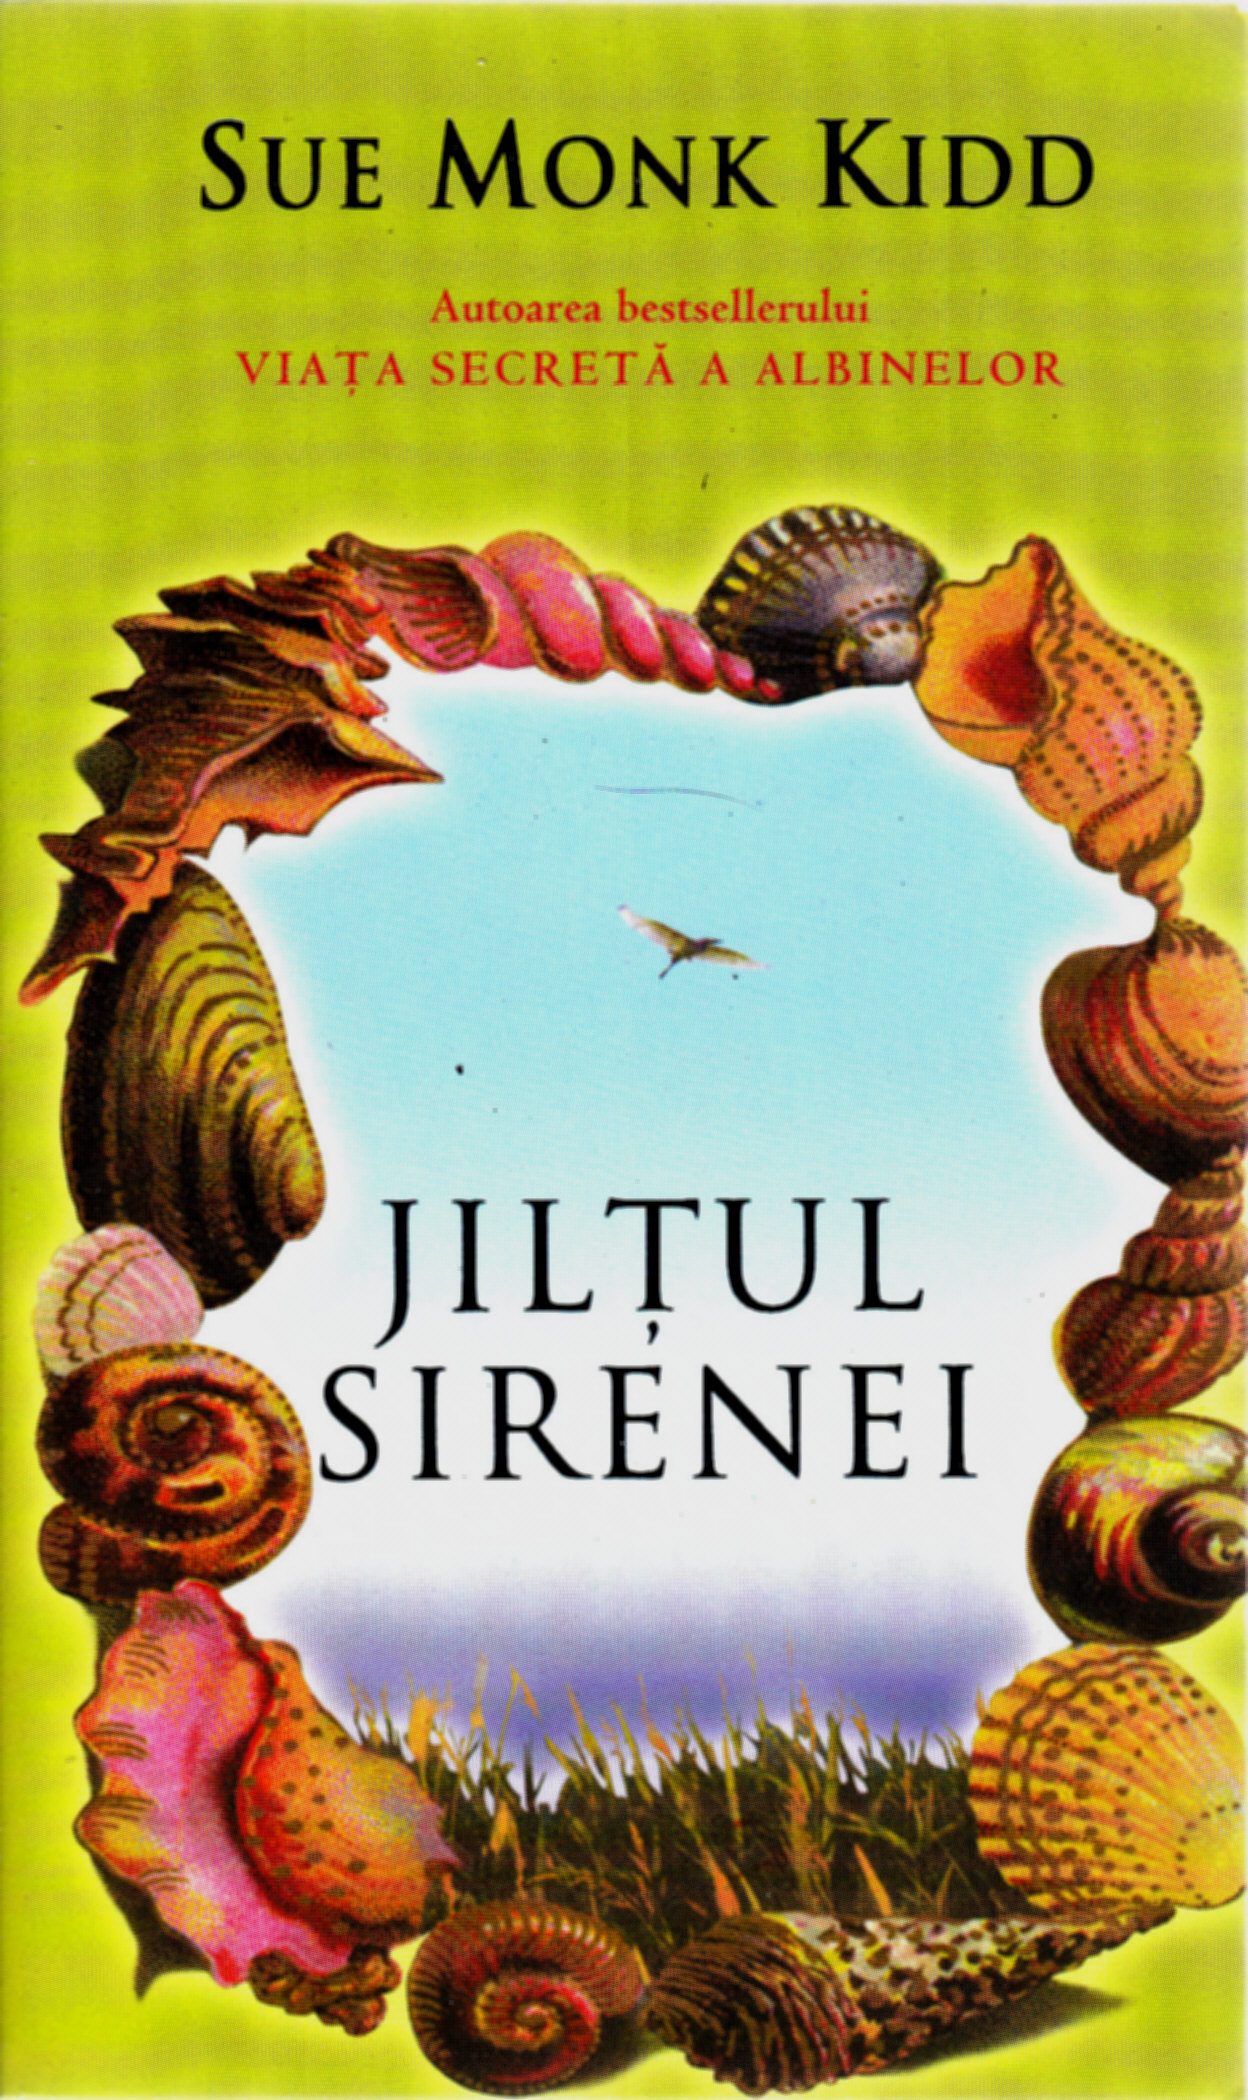 Jiltul Sirenei - Sue Monk Kidd